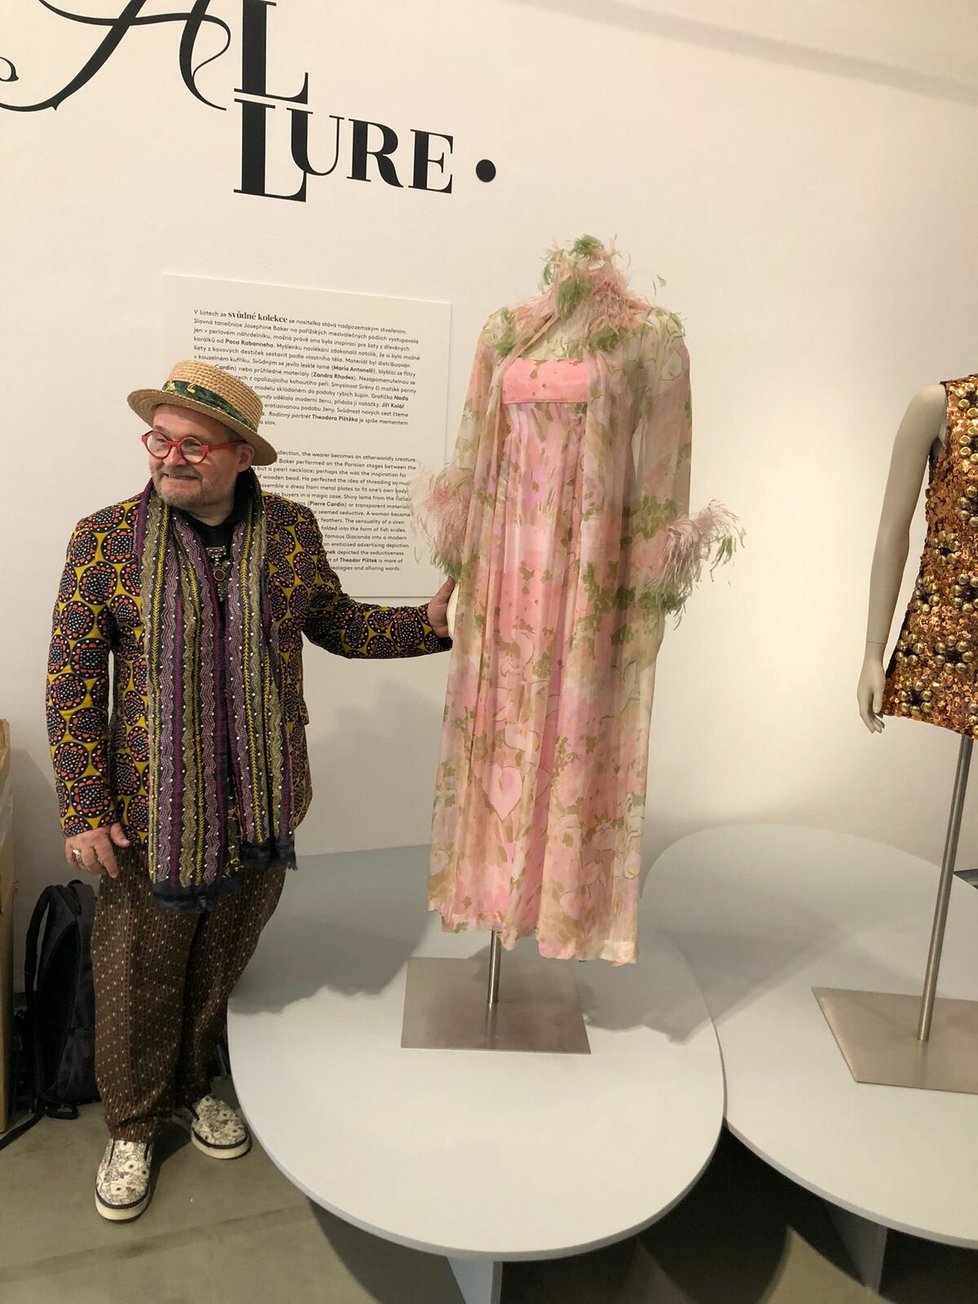 Výstava Fashion Paradox - Móda vs. Umění v Museu Kampa ukazuje kurátorský výběr šatů ze sbírky litevského módního nadšence Alexandra Vasilieva